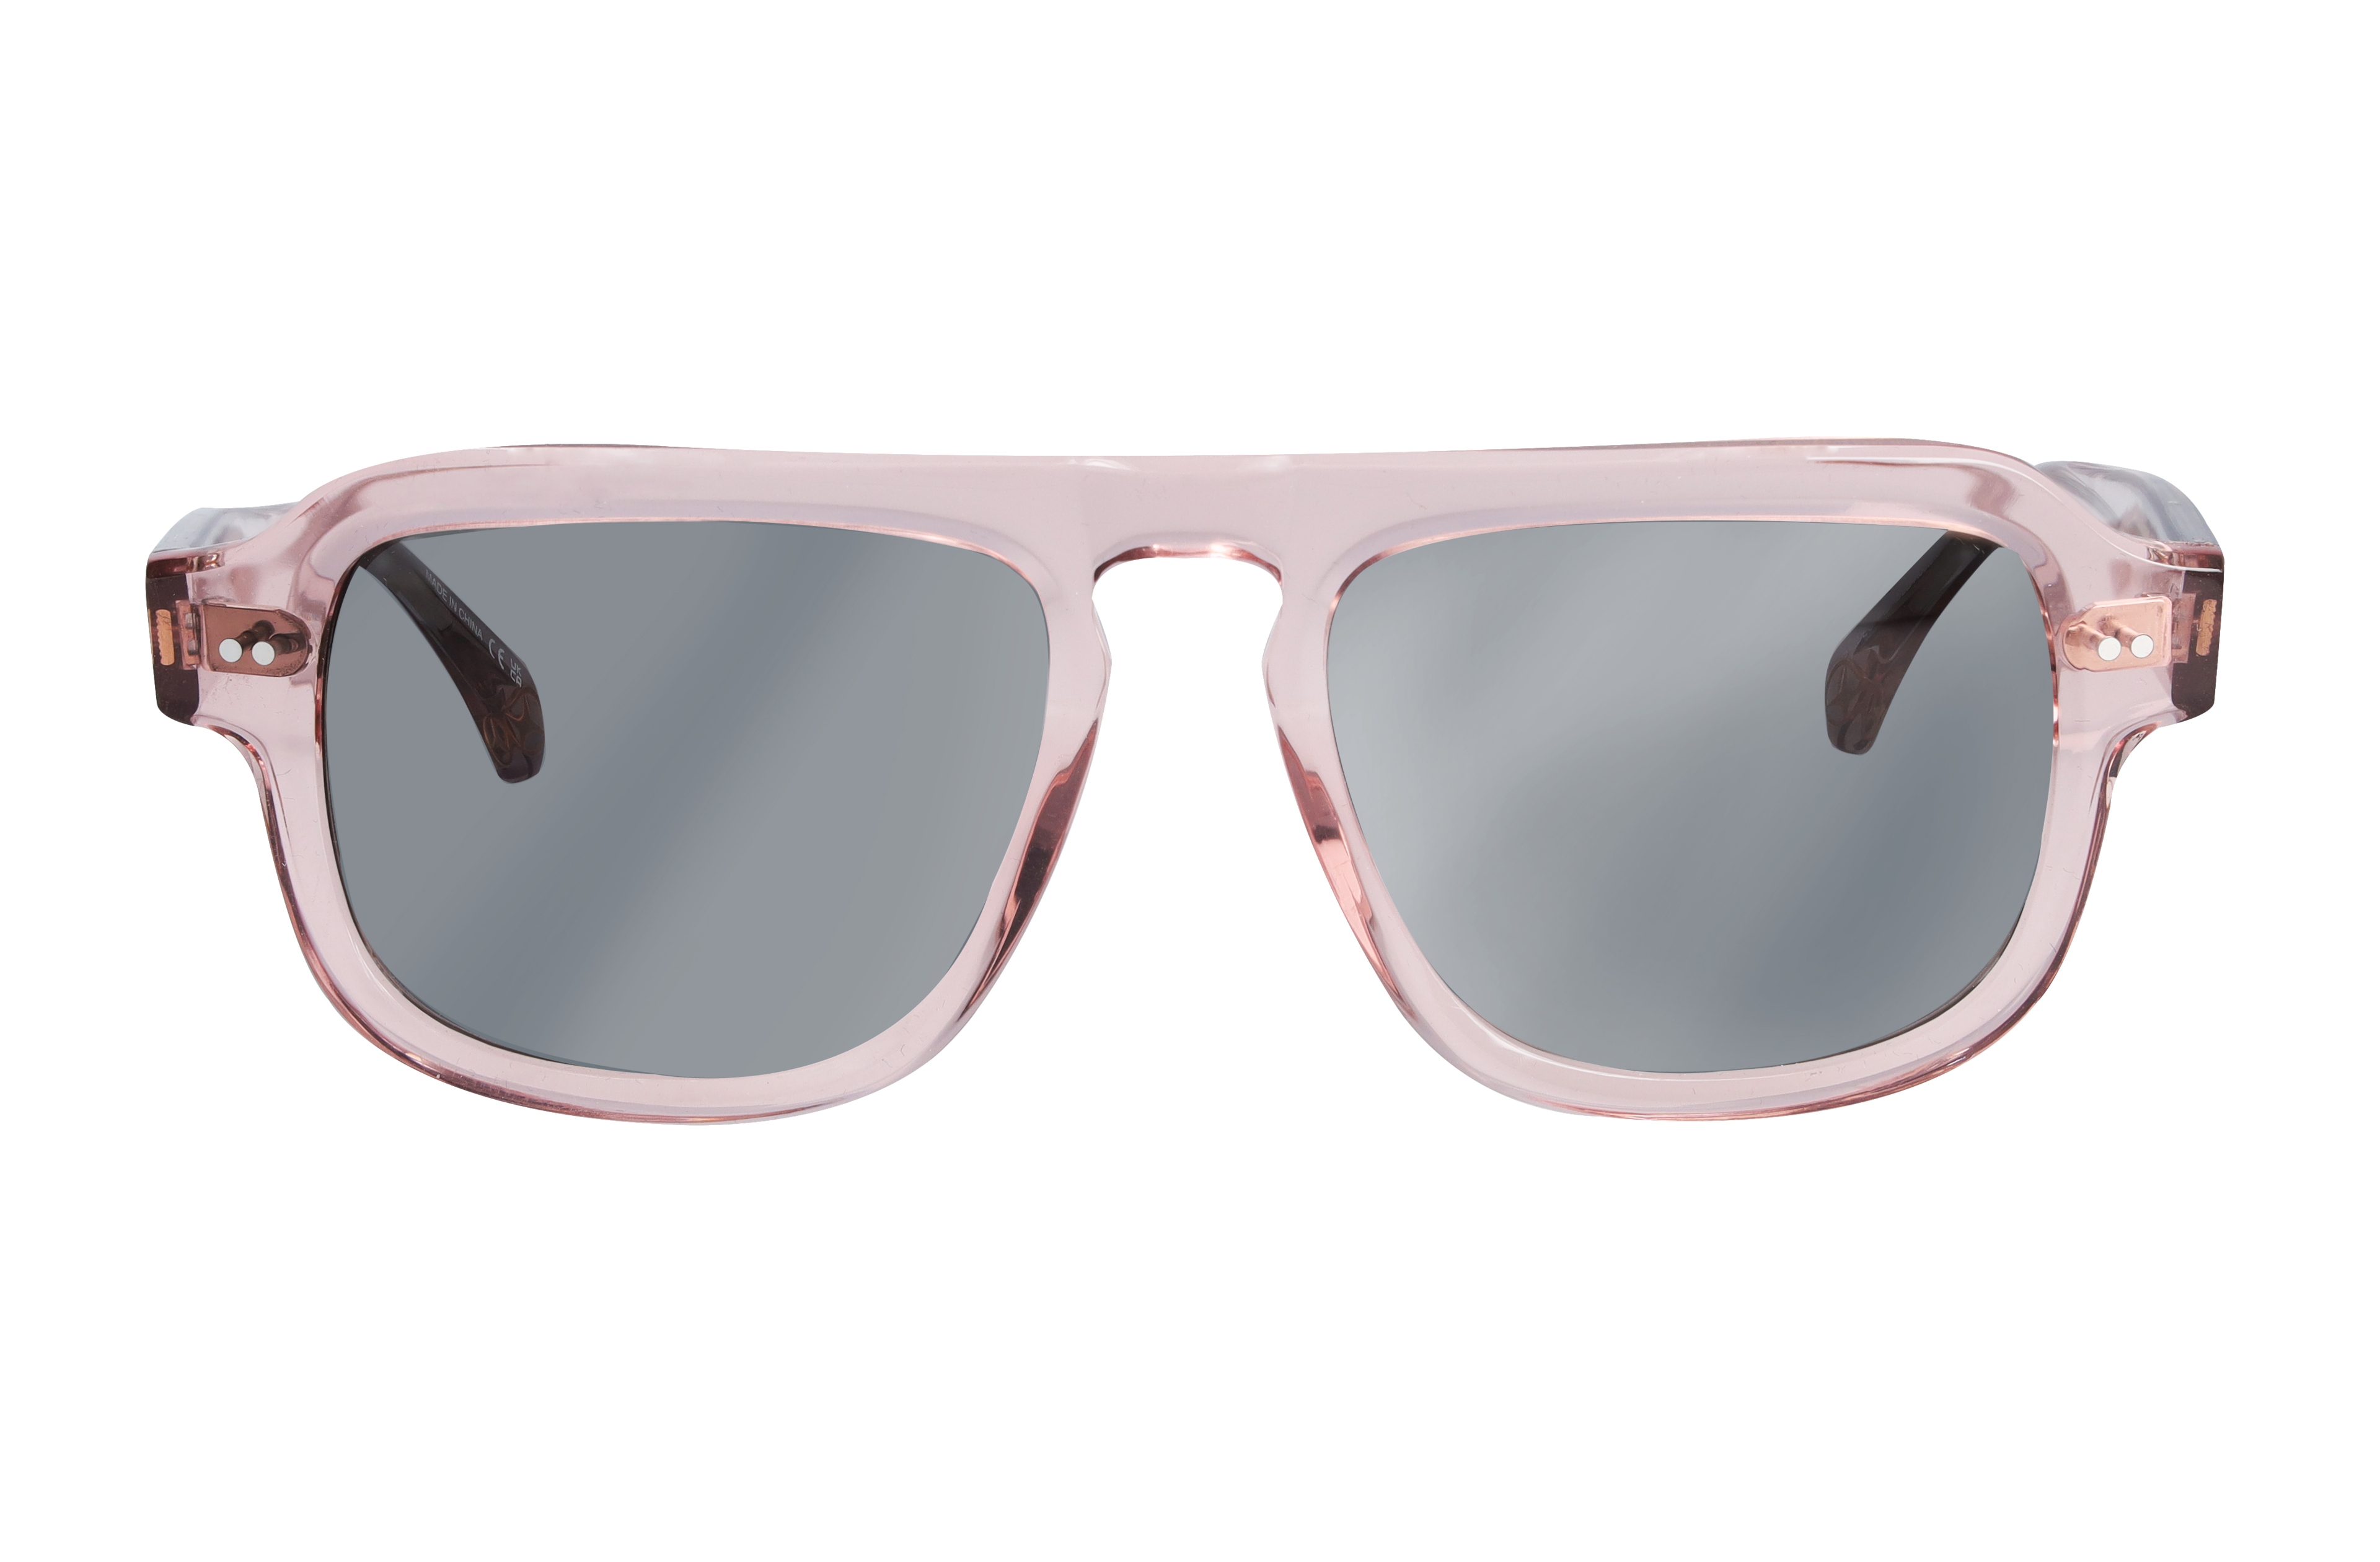 Sonnenbrille, Unisex - roségold / bronzefarben, Acetat, transparent